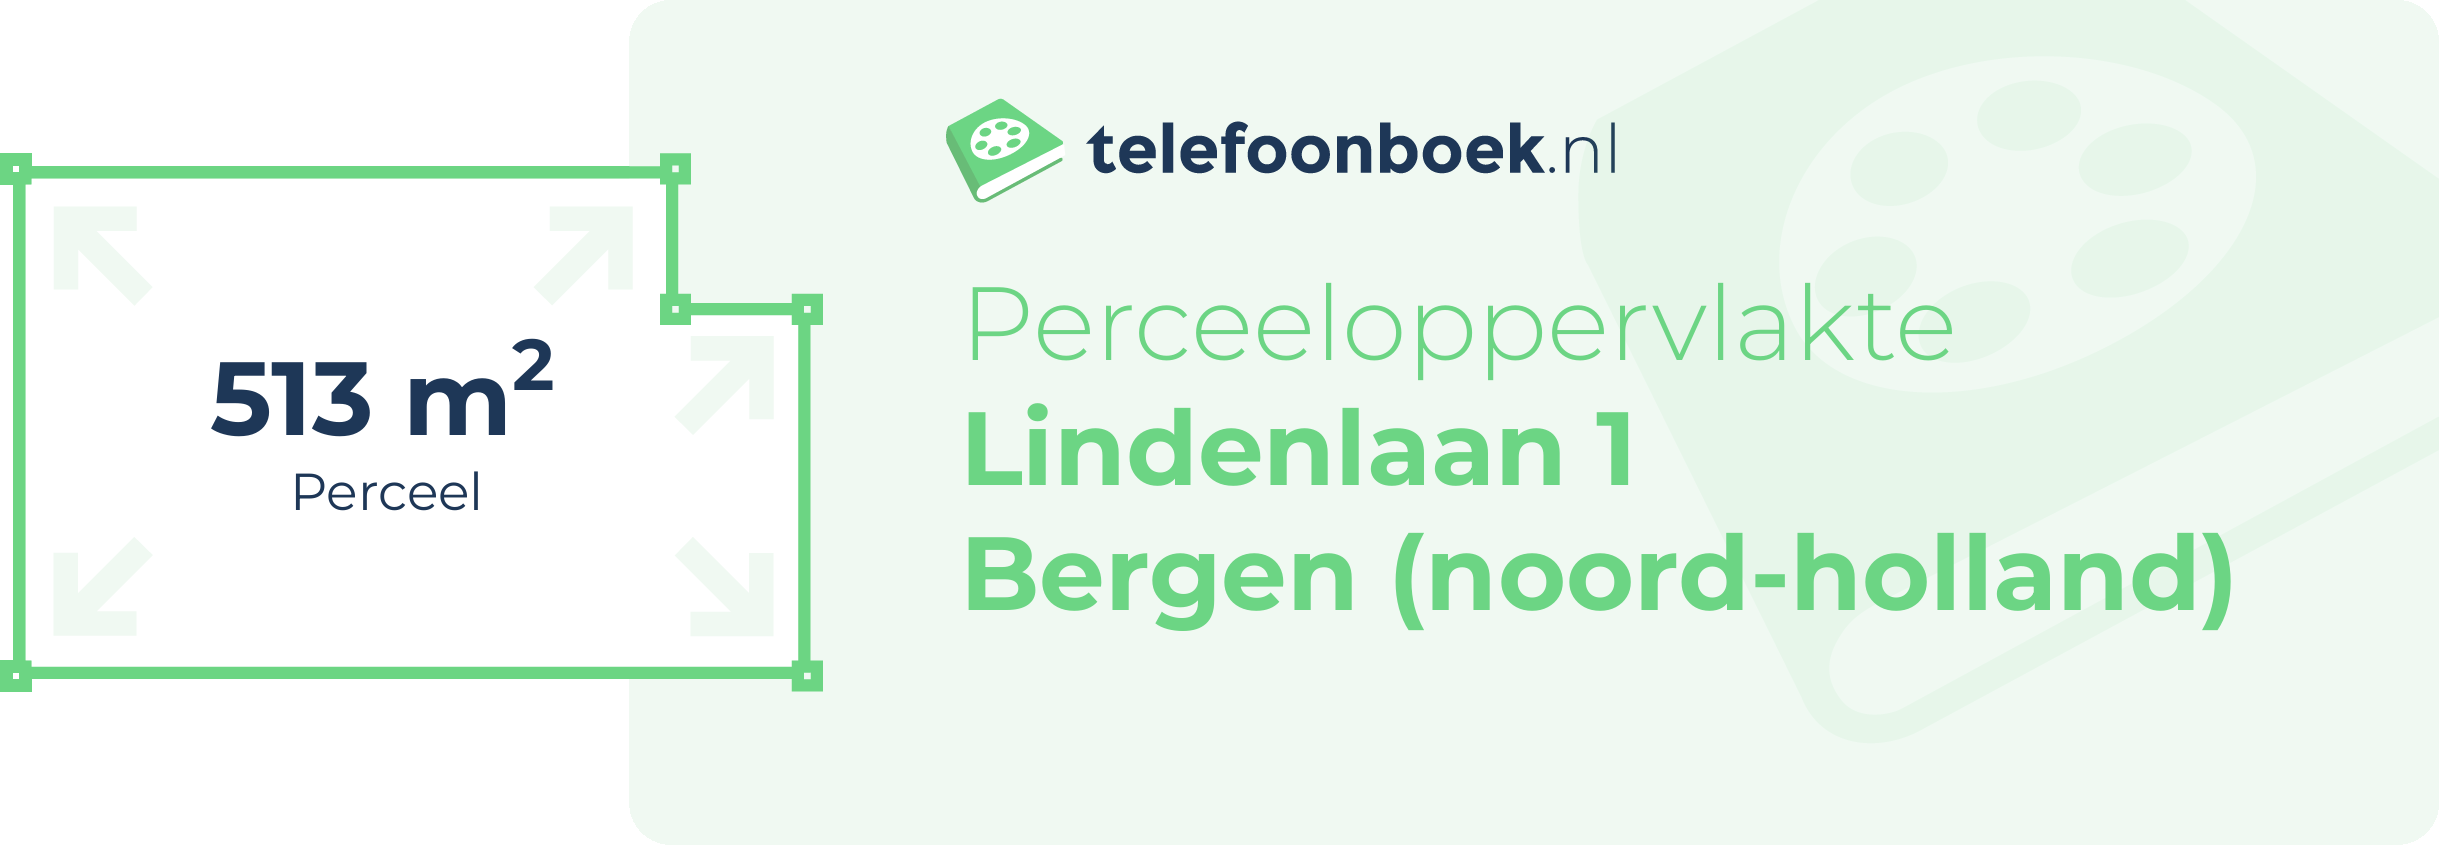 Perceeloppervlakte Lindenlaan 1 Bergen (Noord-Holland)